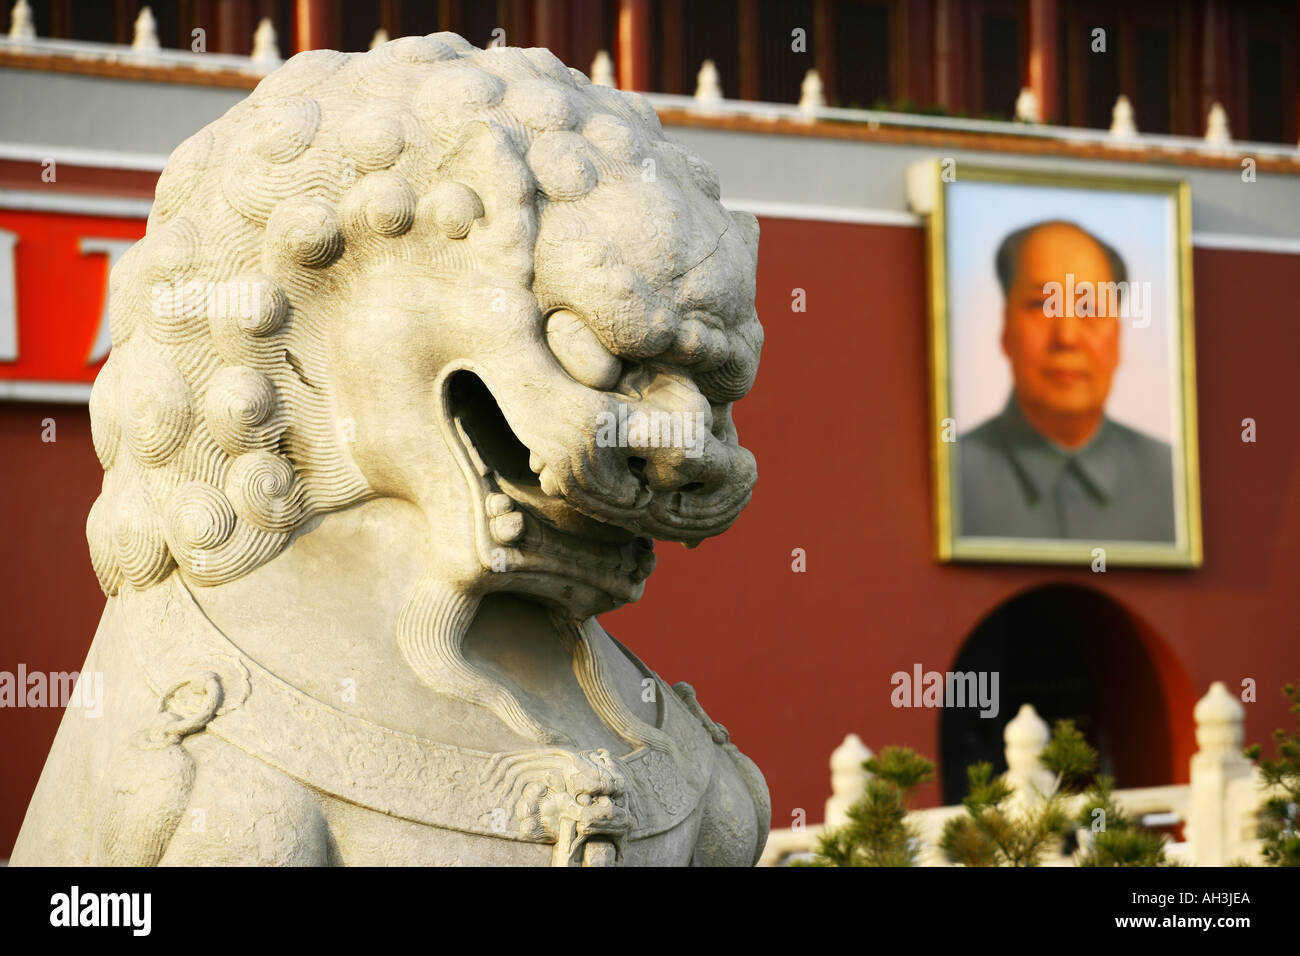 Portrait du président Mao Place Tiananmen porte de la paix céleste Beijing Chine Banque D'Images